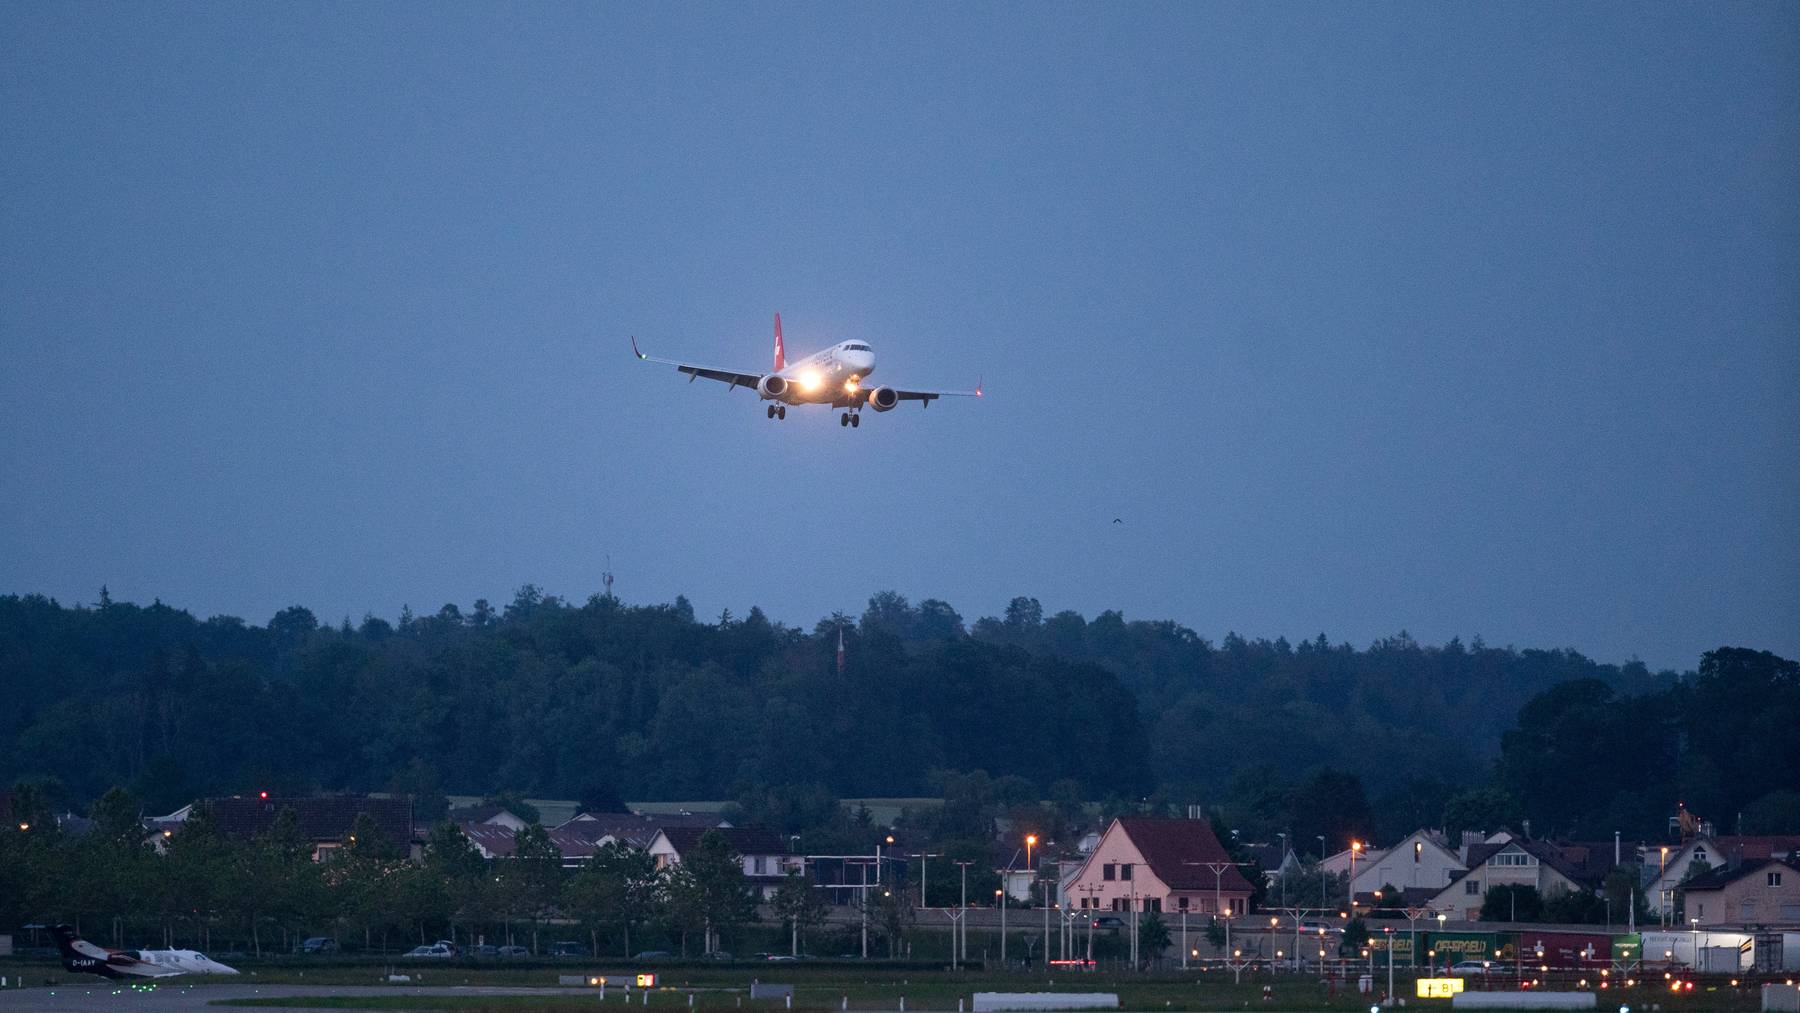 Am Flughafen Zürich-Kloten gilt ein nächtliches Flugverbot zwischen 23.30 und 6.00 Uhr.